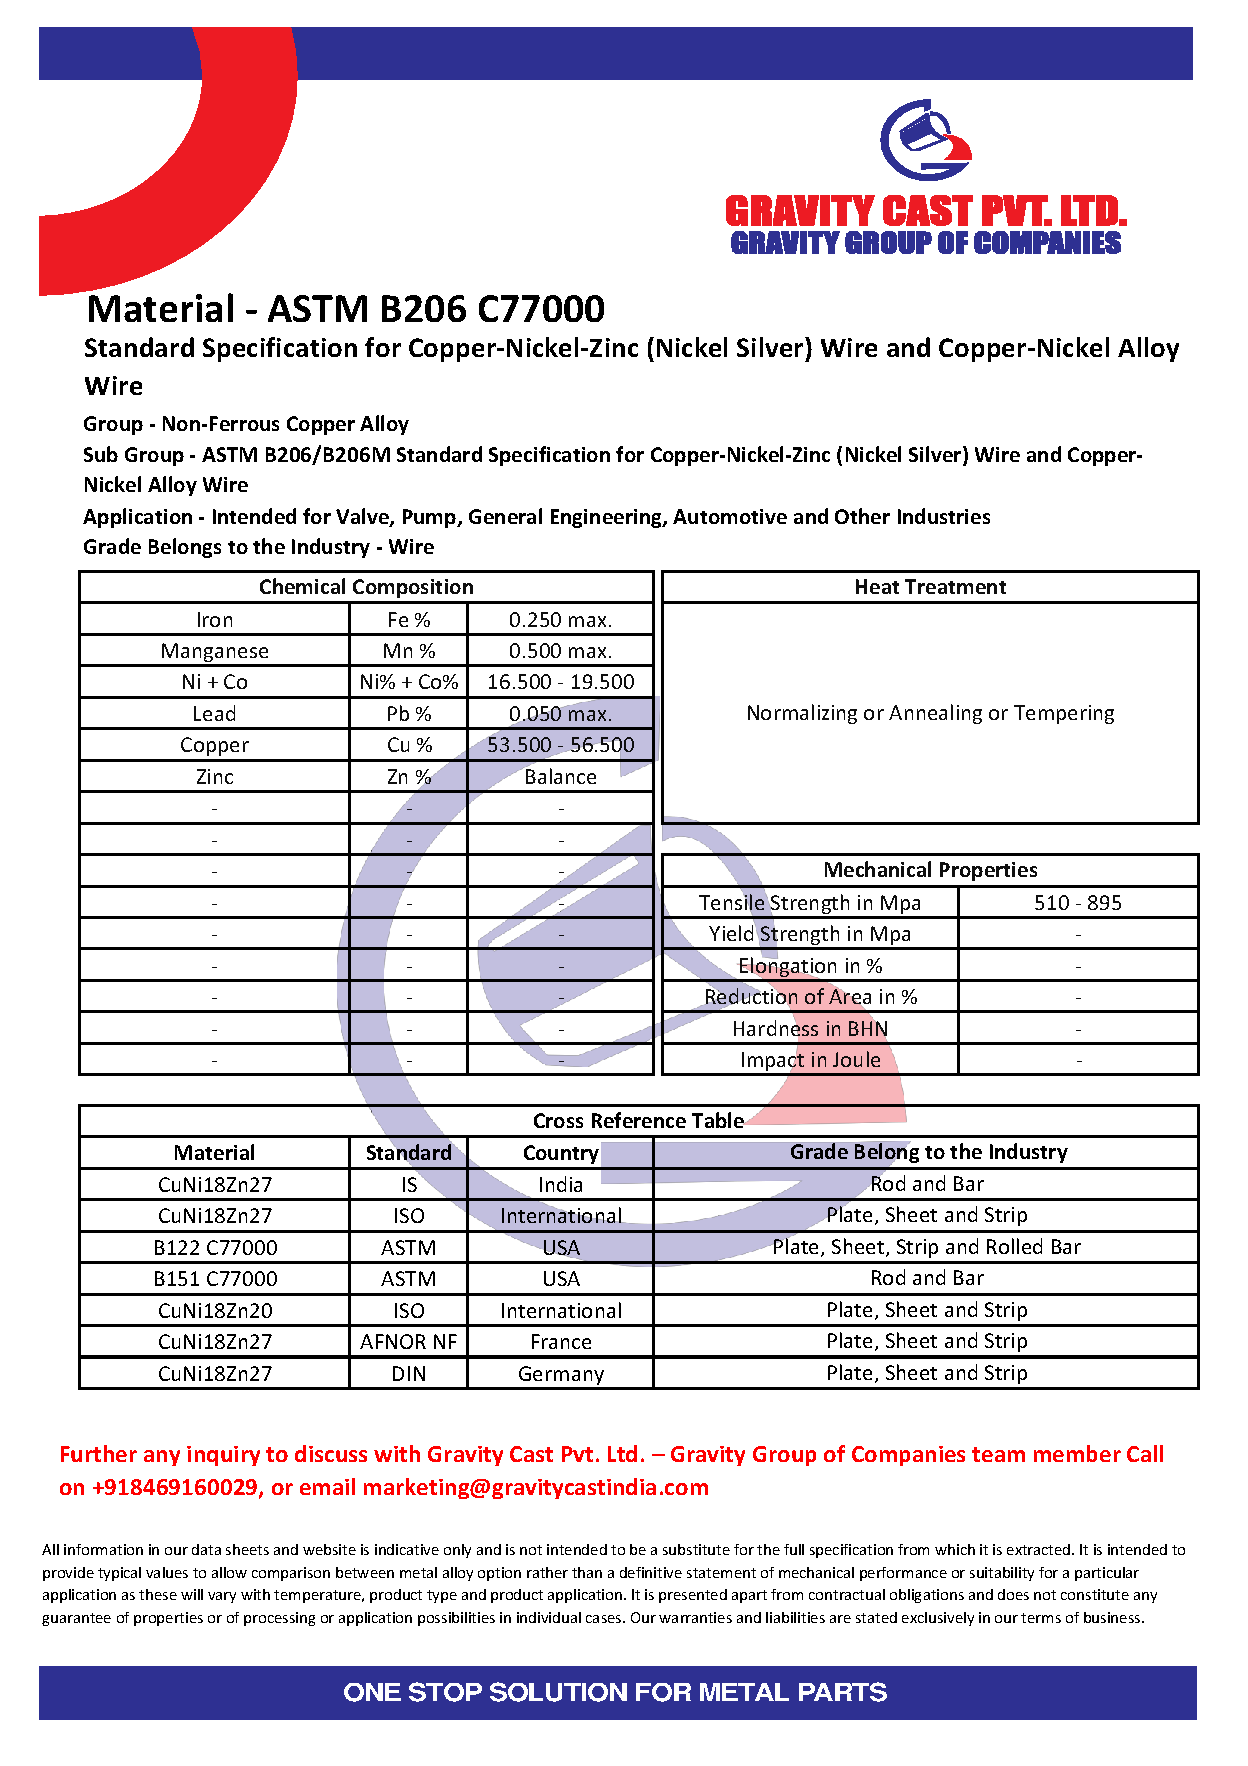 ASTM B206 C77000.pdf